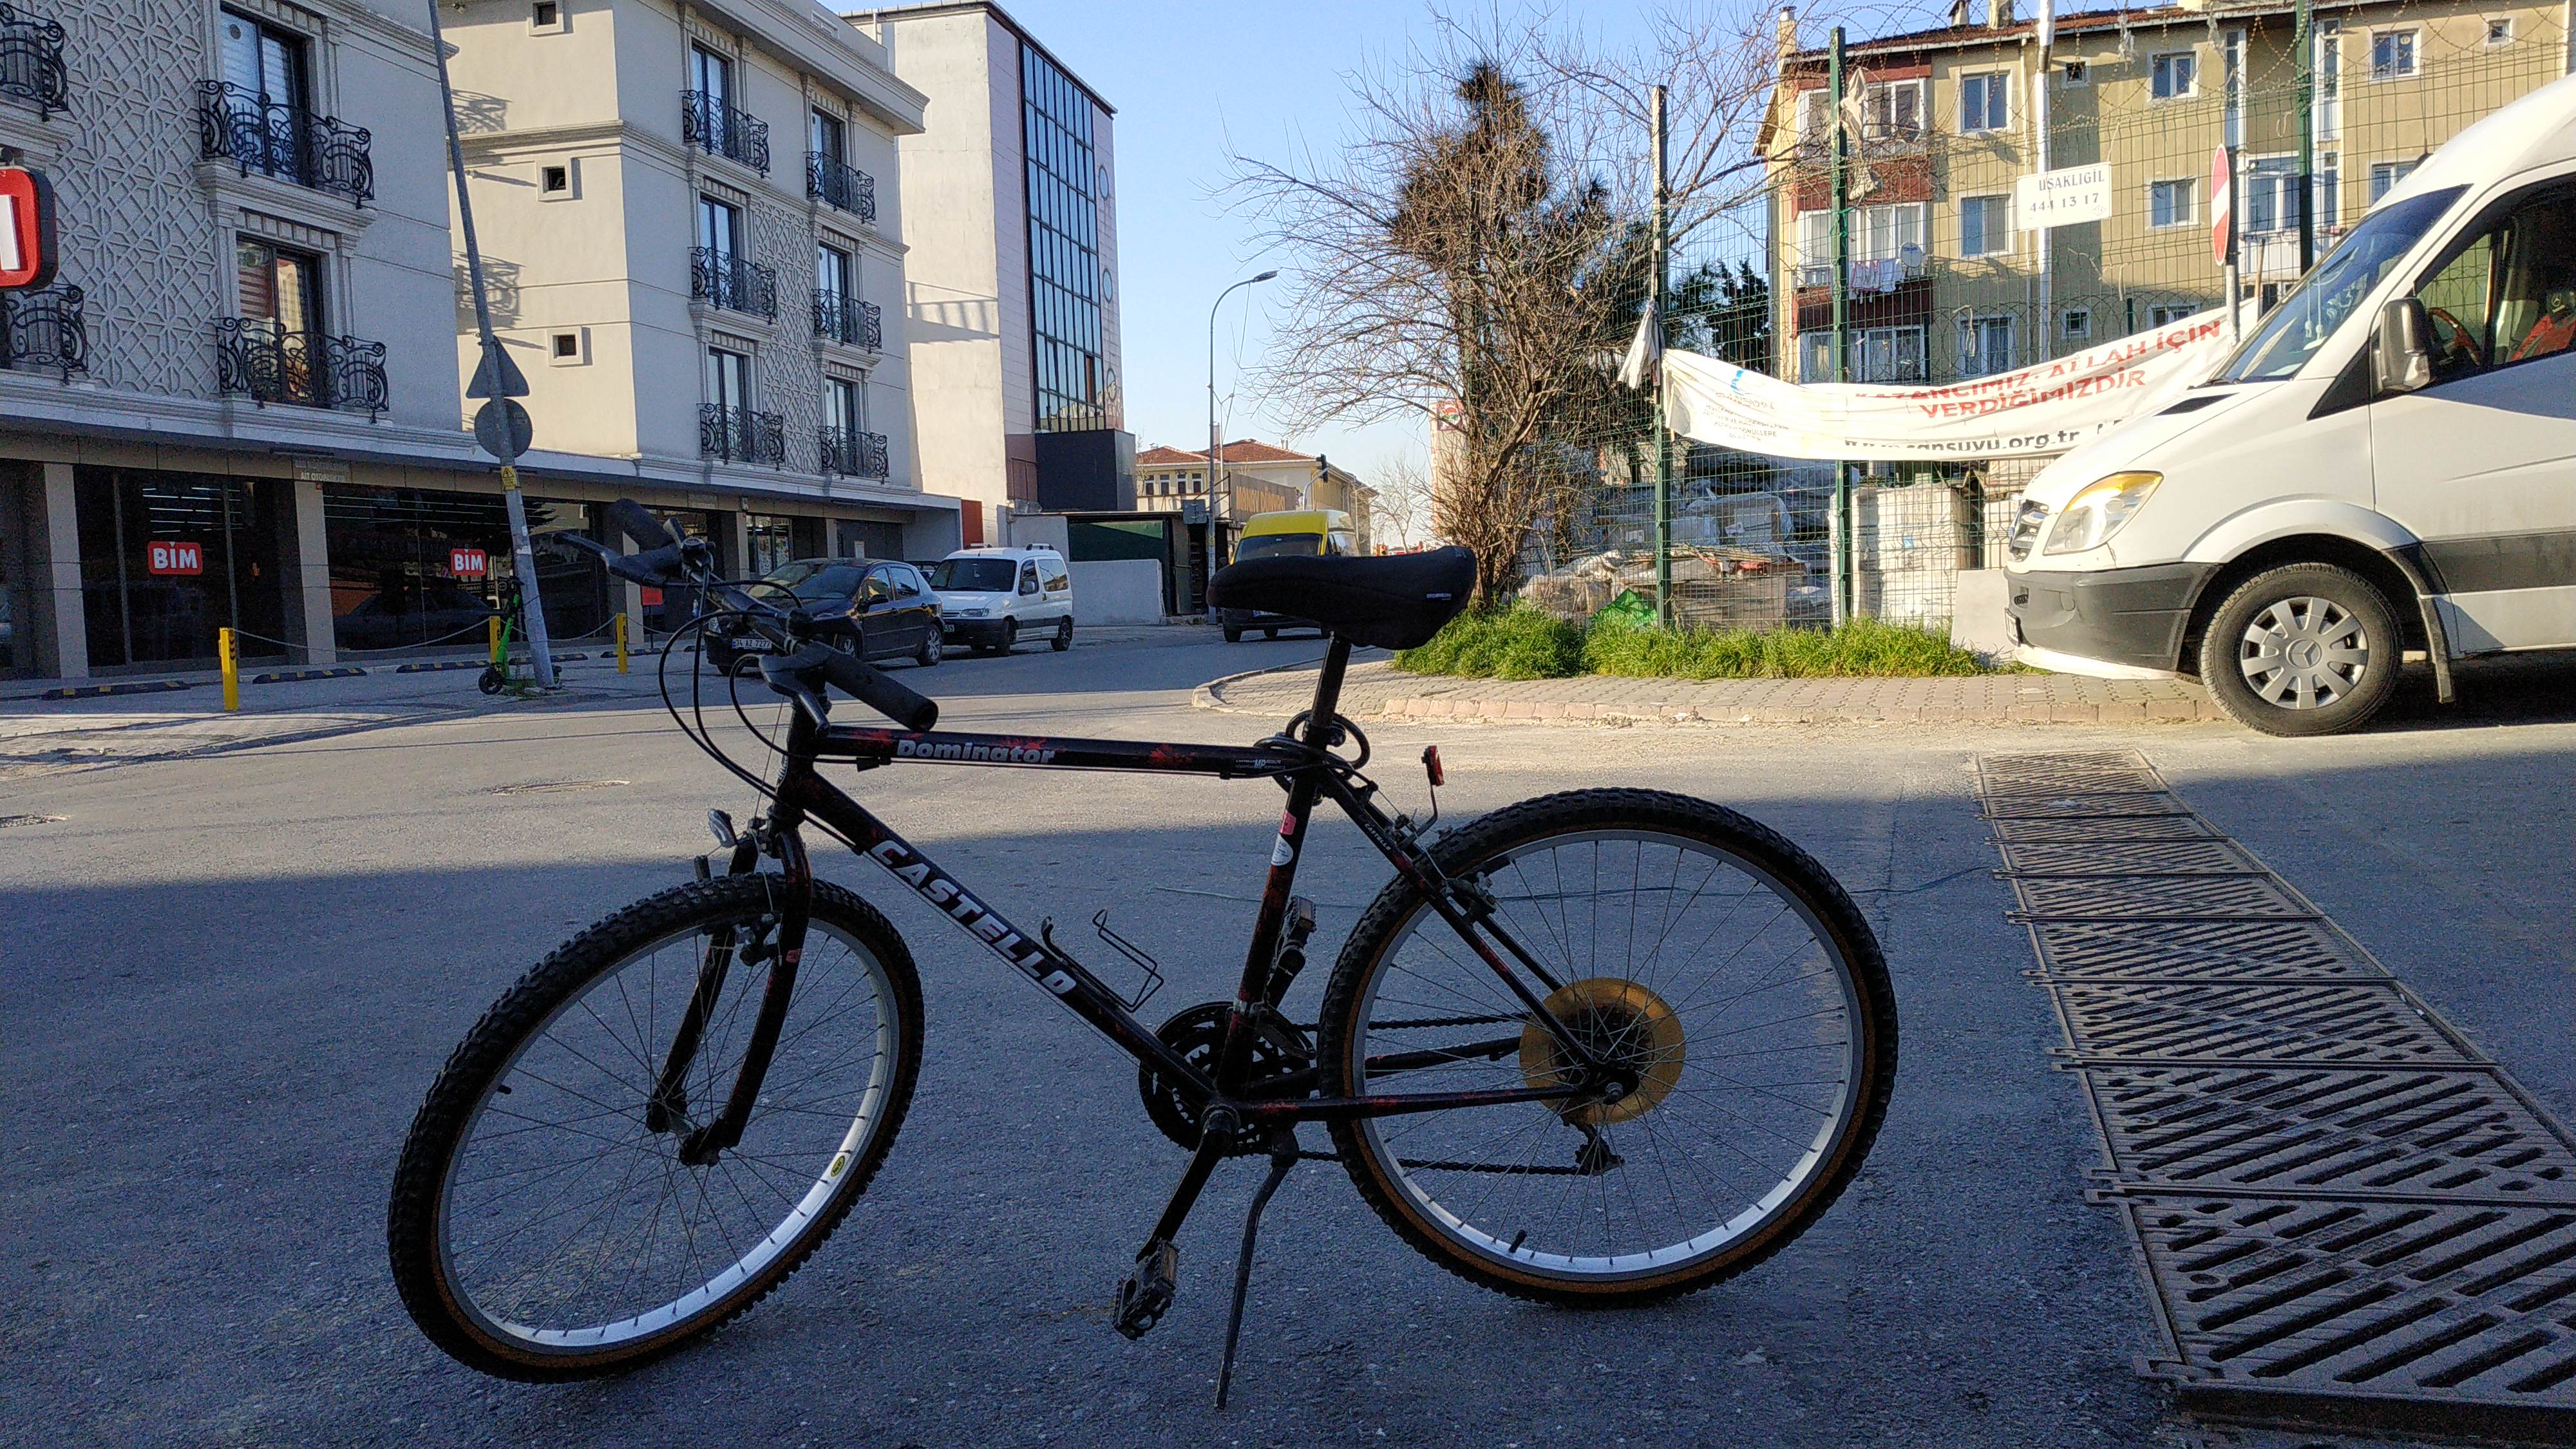 SATILDI] Castello Dominator dağ bisikleti 550 TL Temiz Sorunsuz Aksesuarlı  [SATILDI] | DonanımHaber Forum